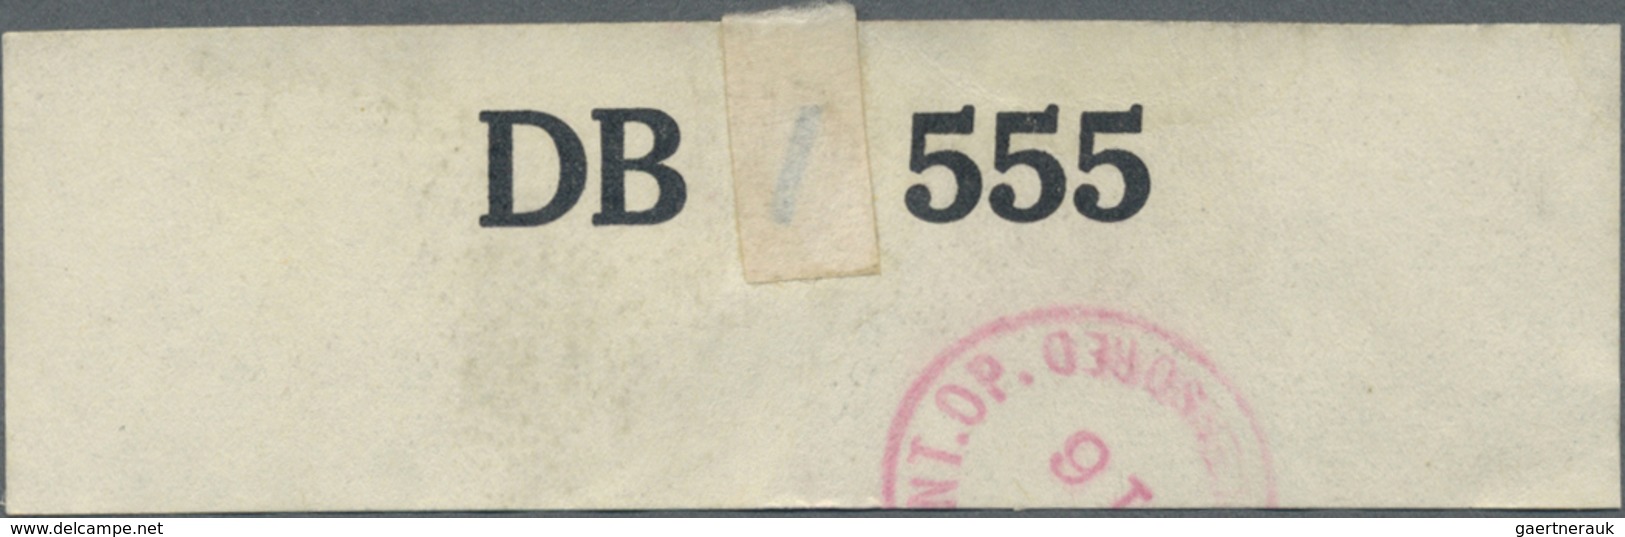 Br Kriegsgefangenen-Lagerpost: 1943, 7.6., Kriegsgefangenenbrief aus BREMEN, per Luftpost, 4 seitiger T